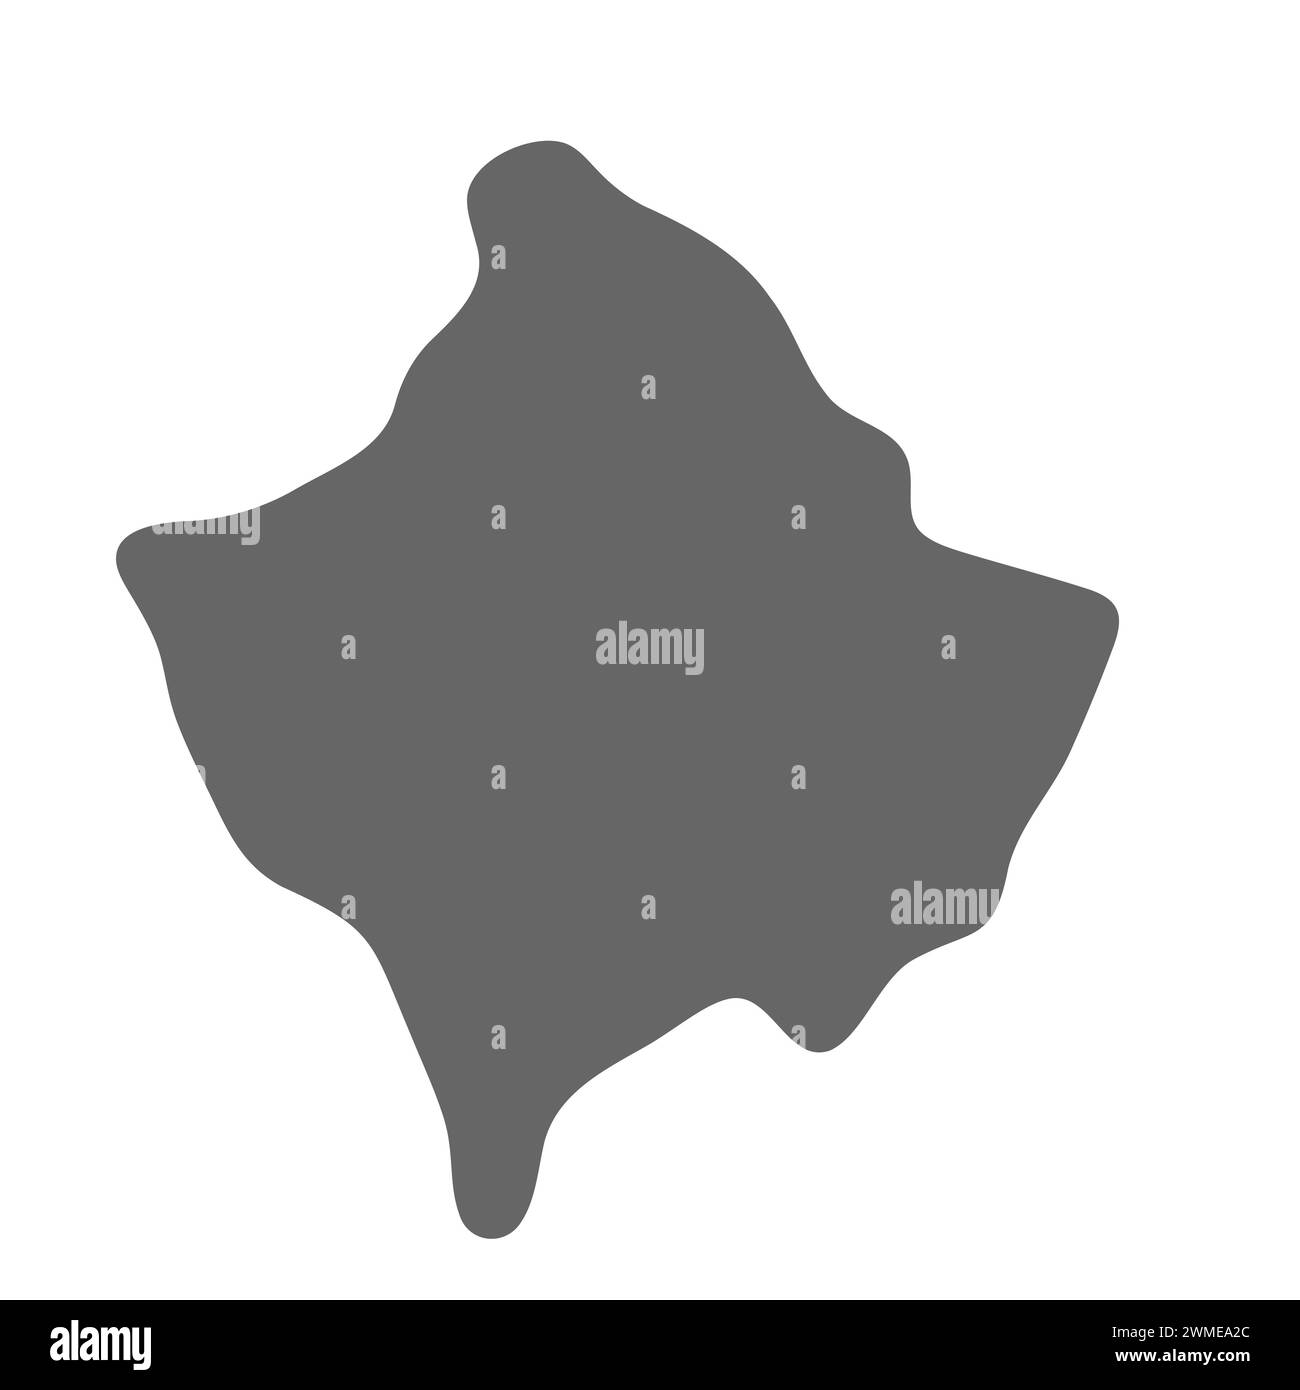 Mappa semplificata del paese del Kosovo. Mappa grigia elegante e uniforme. Icone vettoriali isolate su sfondo bianco. Illustrazione Vettoriale